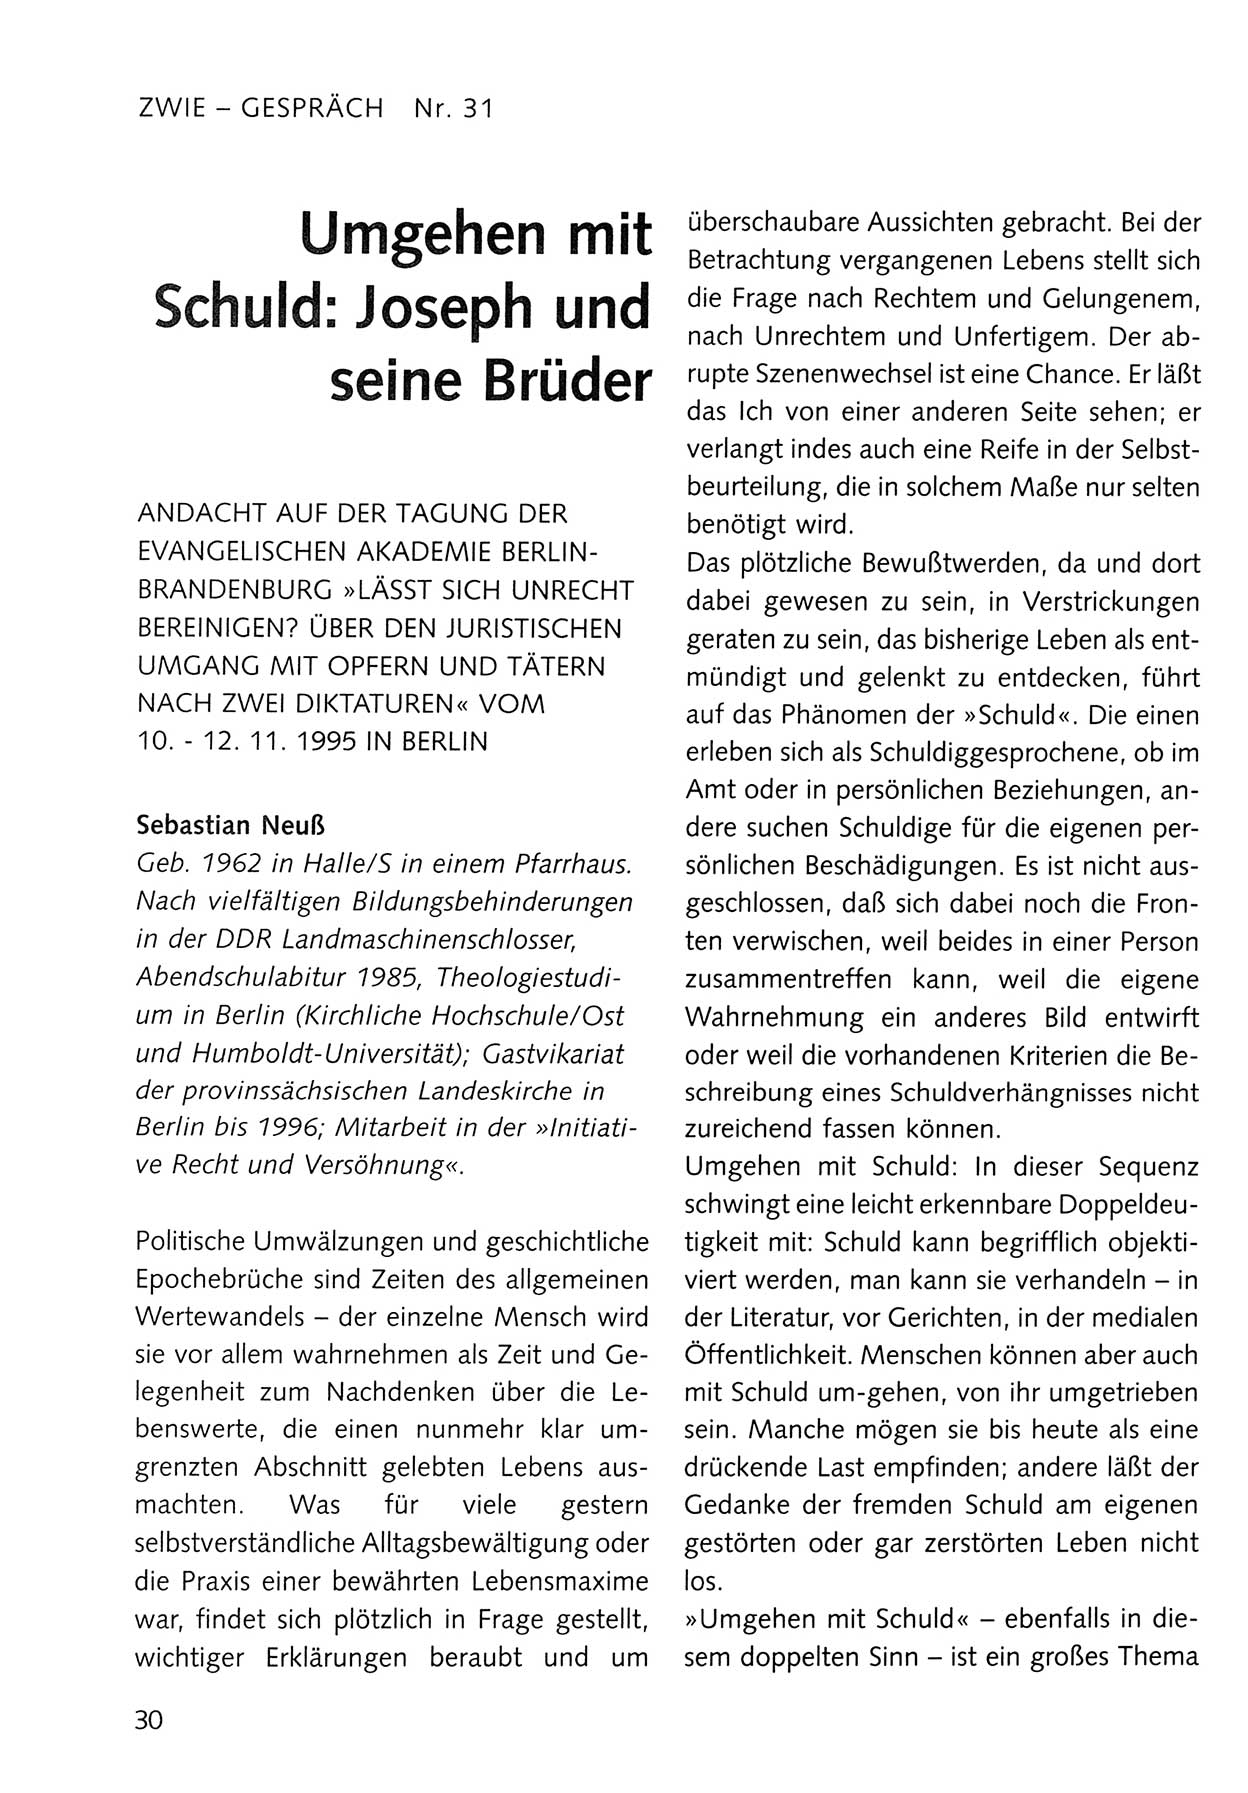 Zwie-Gespräch, Beiträge zum Umgang mit der Staatssicherheits-Vergangenheit [Deutsche Demokratische Republik (DDR)], Ausgabe Nr. 31, Berlin 1995, Seite 30 (Zwie-Gespr. Ausg. 31 1995, S. 30)